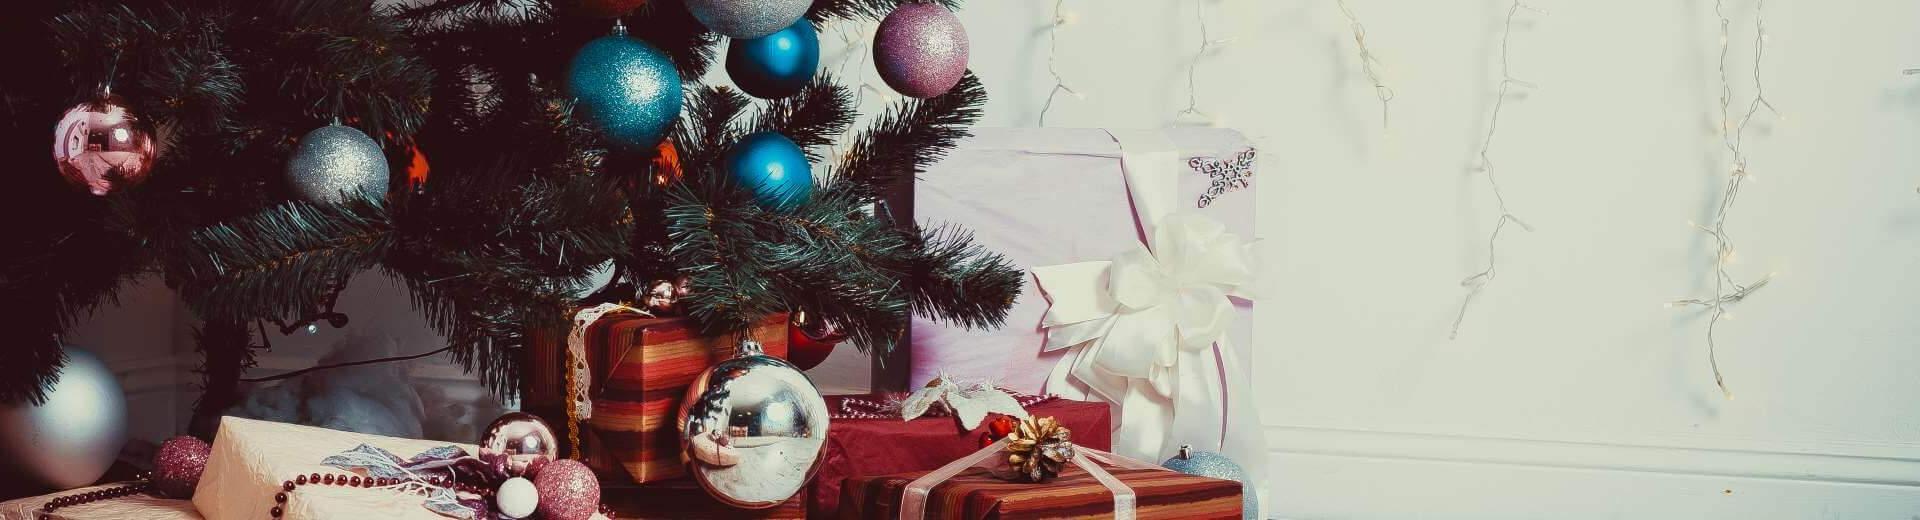 Weihnachten im Ferienhaus in Dänemark | Casamundo - Casamundo